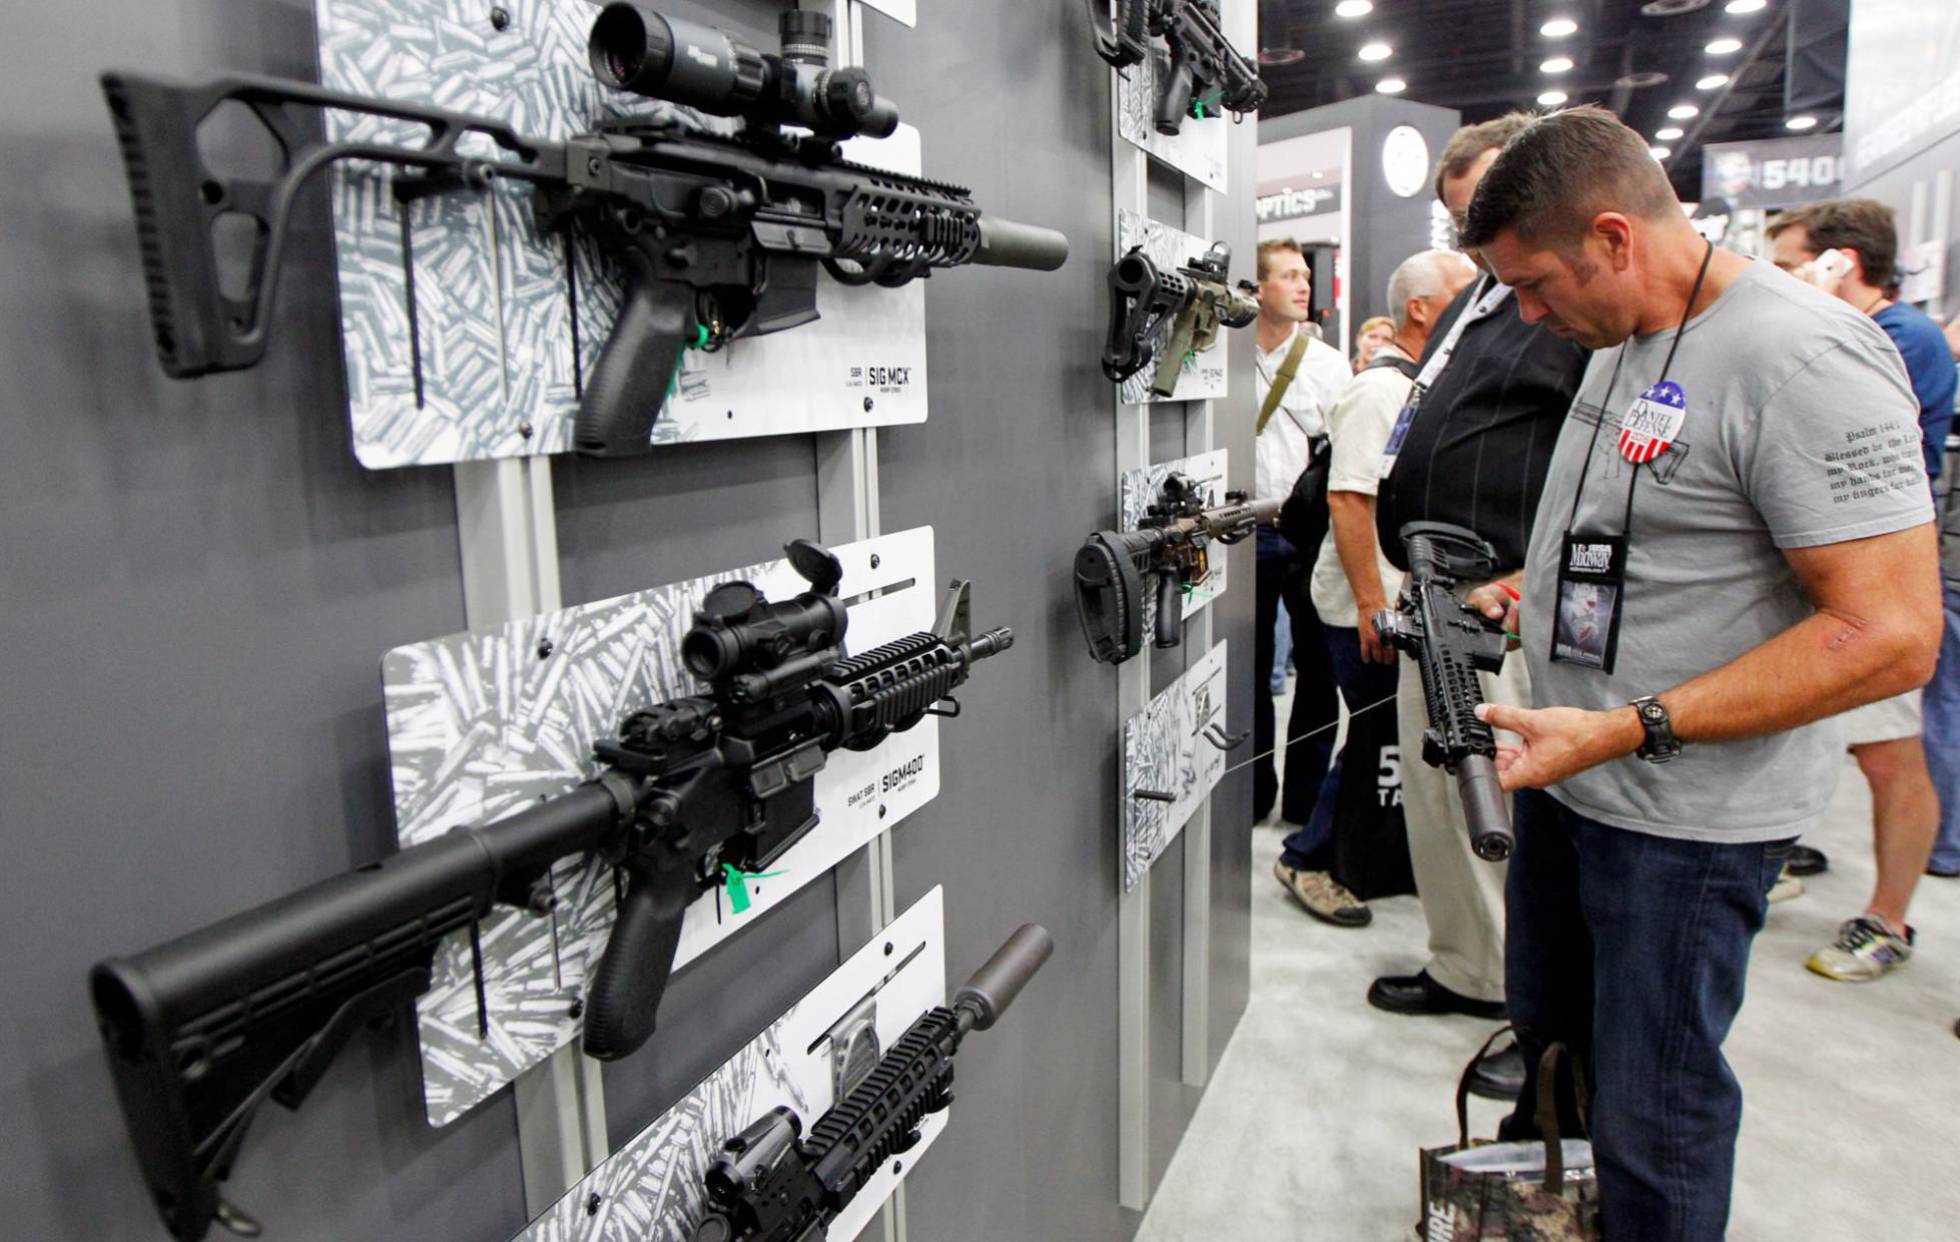 Estados Unidos: récord de ventas de armas en el Black Friday